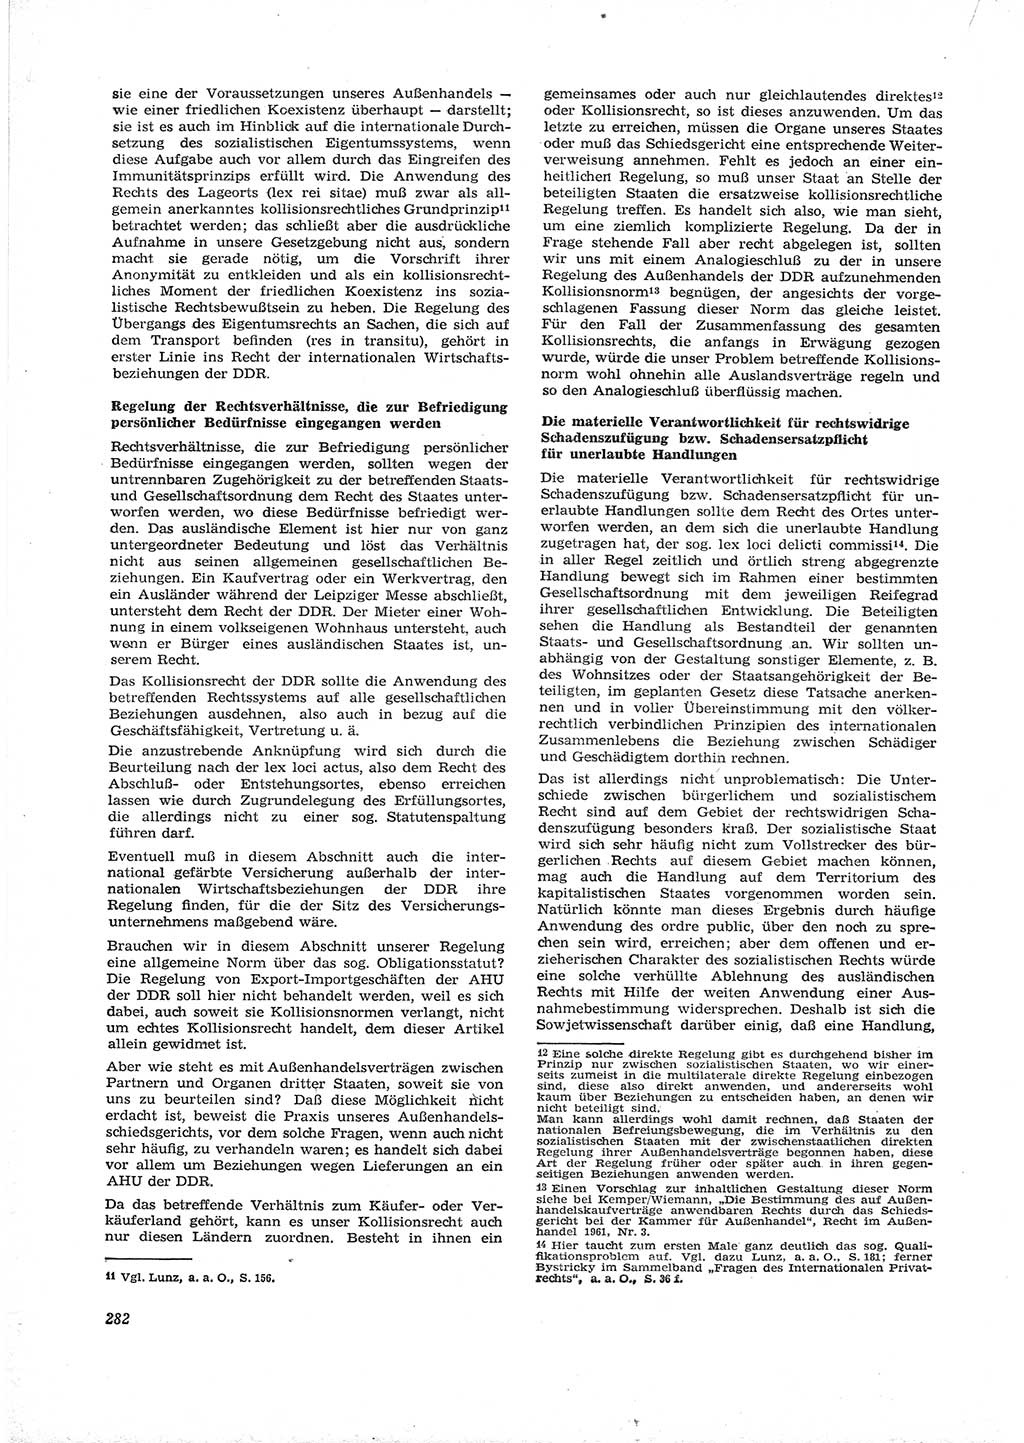 Neue Justiz (NJ), Zeitschrift für Recht und Rechtswissenschaft [Deutsche Demokratische Republik (DDR)], 16. Jahrgang 1962, Seite 282 (NJ DDR 1962, S. 282)